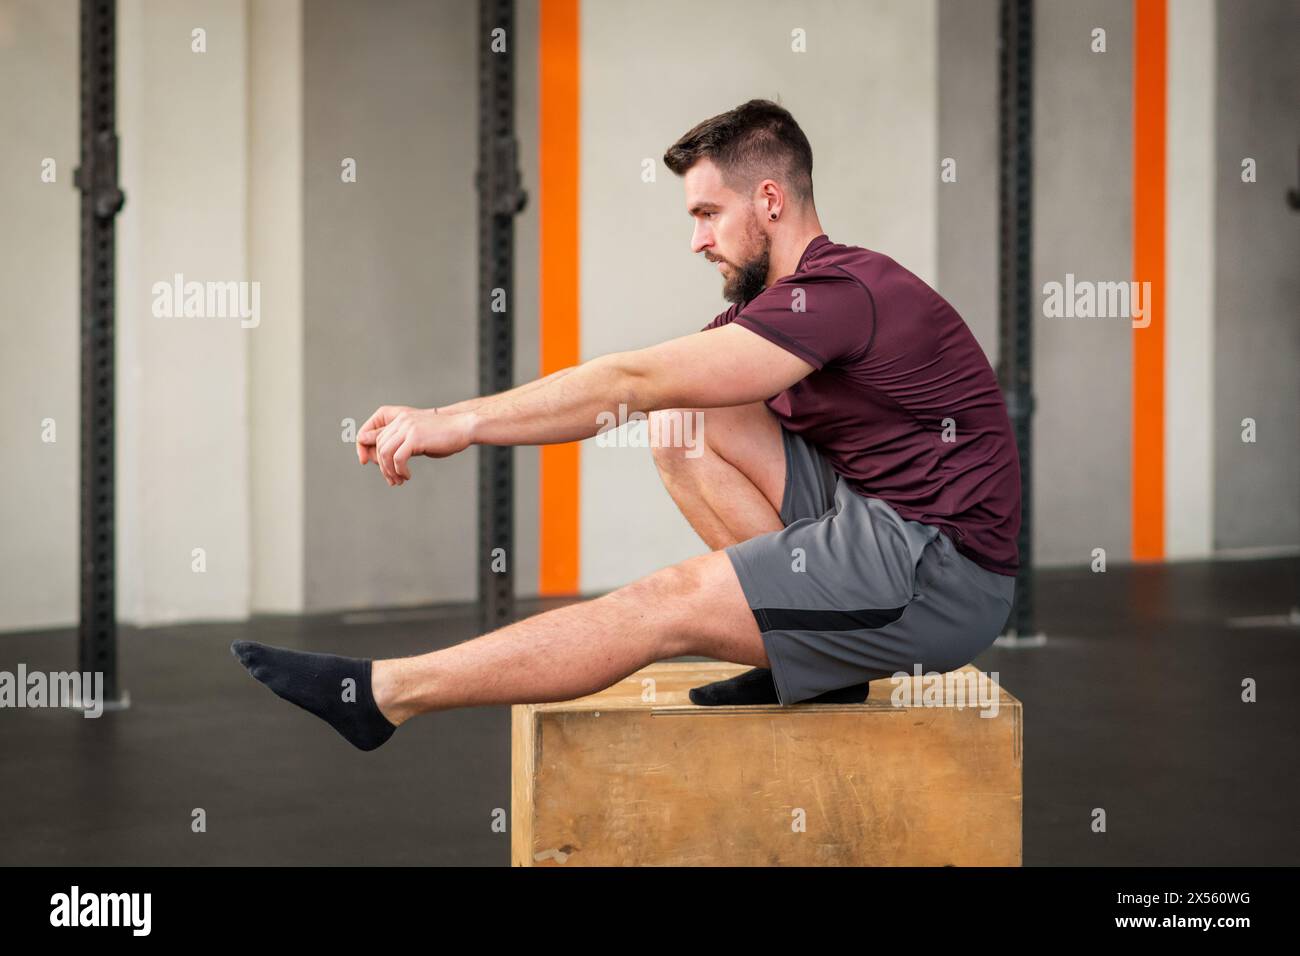 Seitenansicht eines starken bärtigen erwachsenen männlichen Athleten in Sportbekleidung, der wegschaut, während er auf der Box sitzt und Calisthenics-Pistolenhockübung bei Tageslicht macht Stockfoto